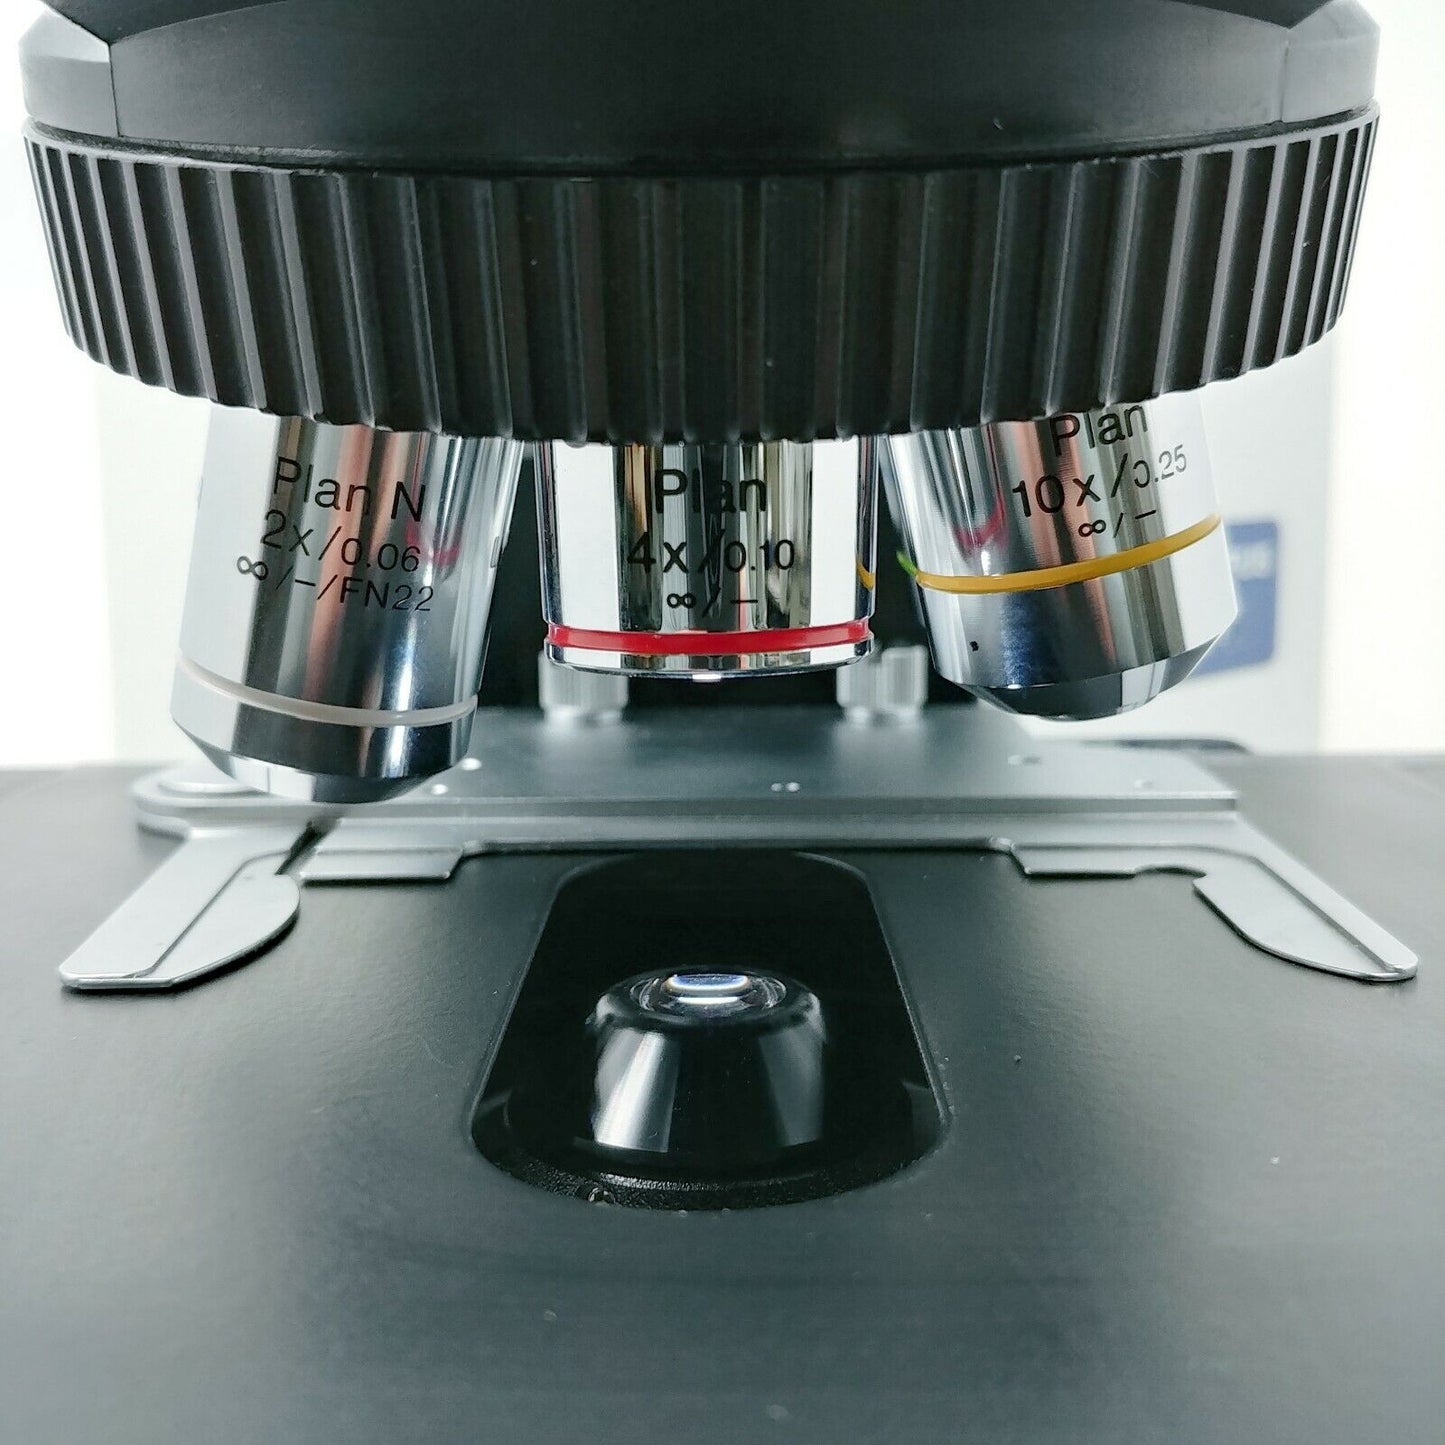 Olympus Microscope BX41 with Binocular Head, Polarizer, Analyzer, U-POT U-ANT - microscopemarketplace